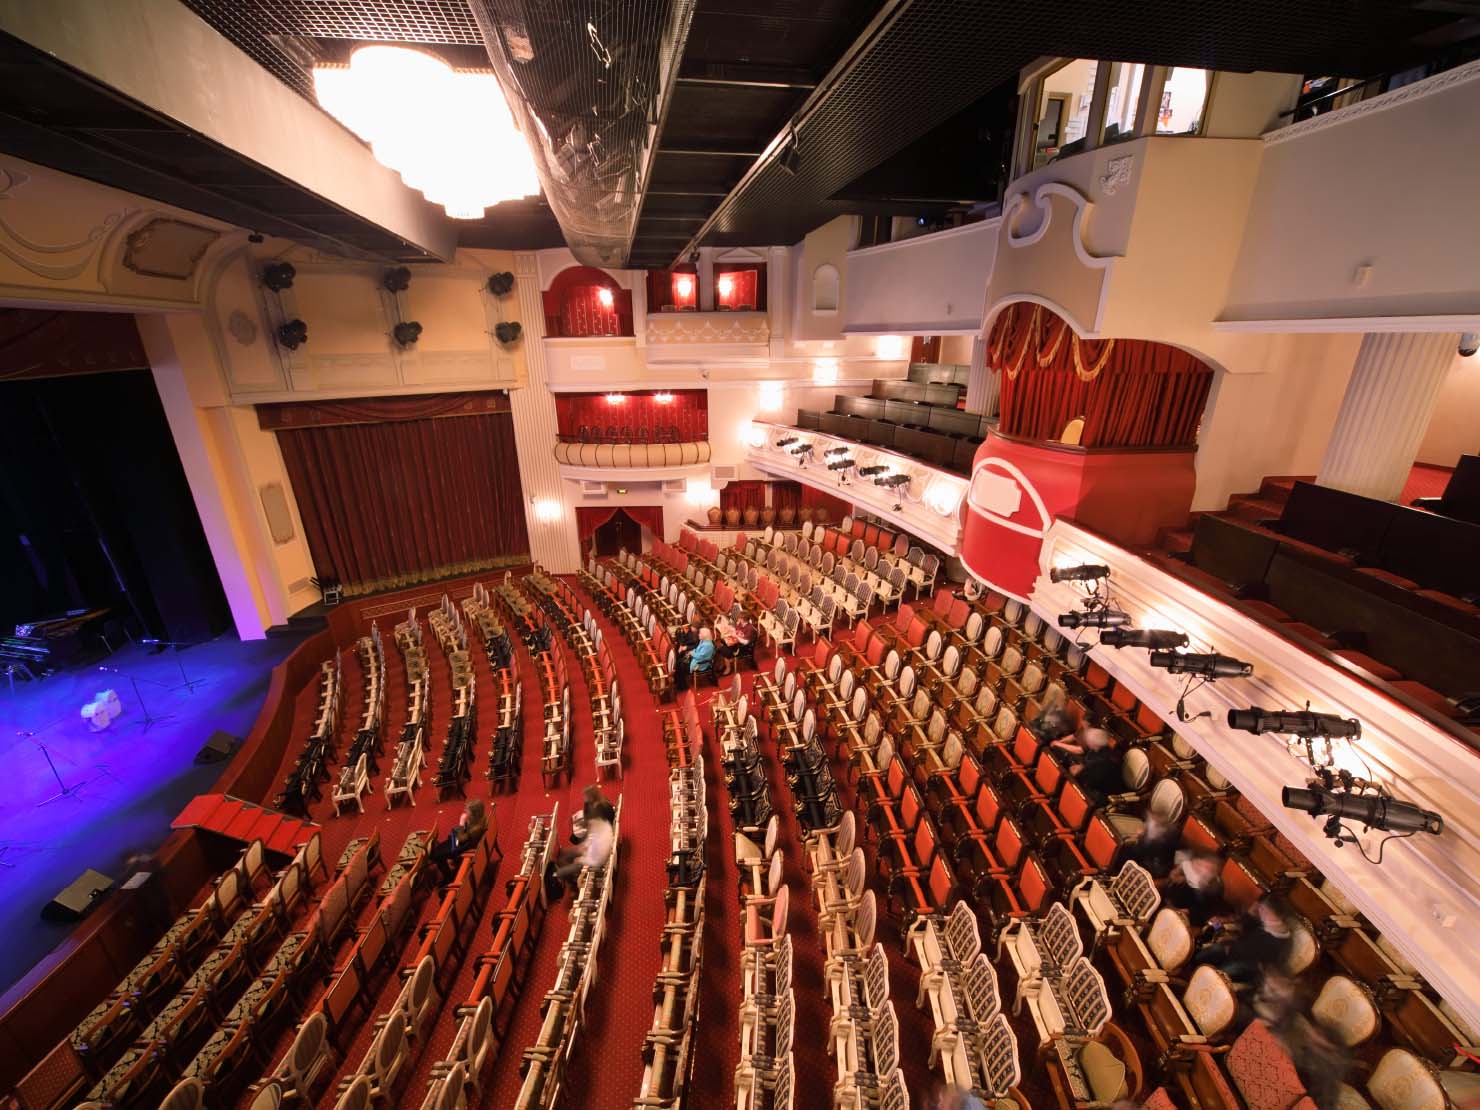 コンサートホール型は舞台も客席も間口が広く扇状に広がった形状のホールで、日本で多く見られるのがこのタイプ